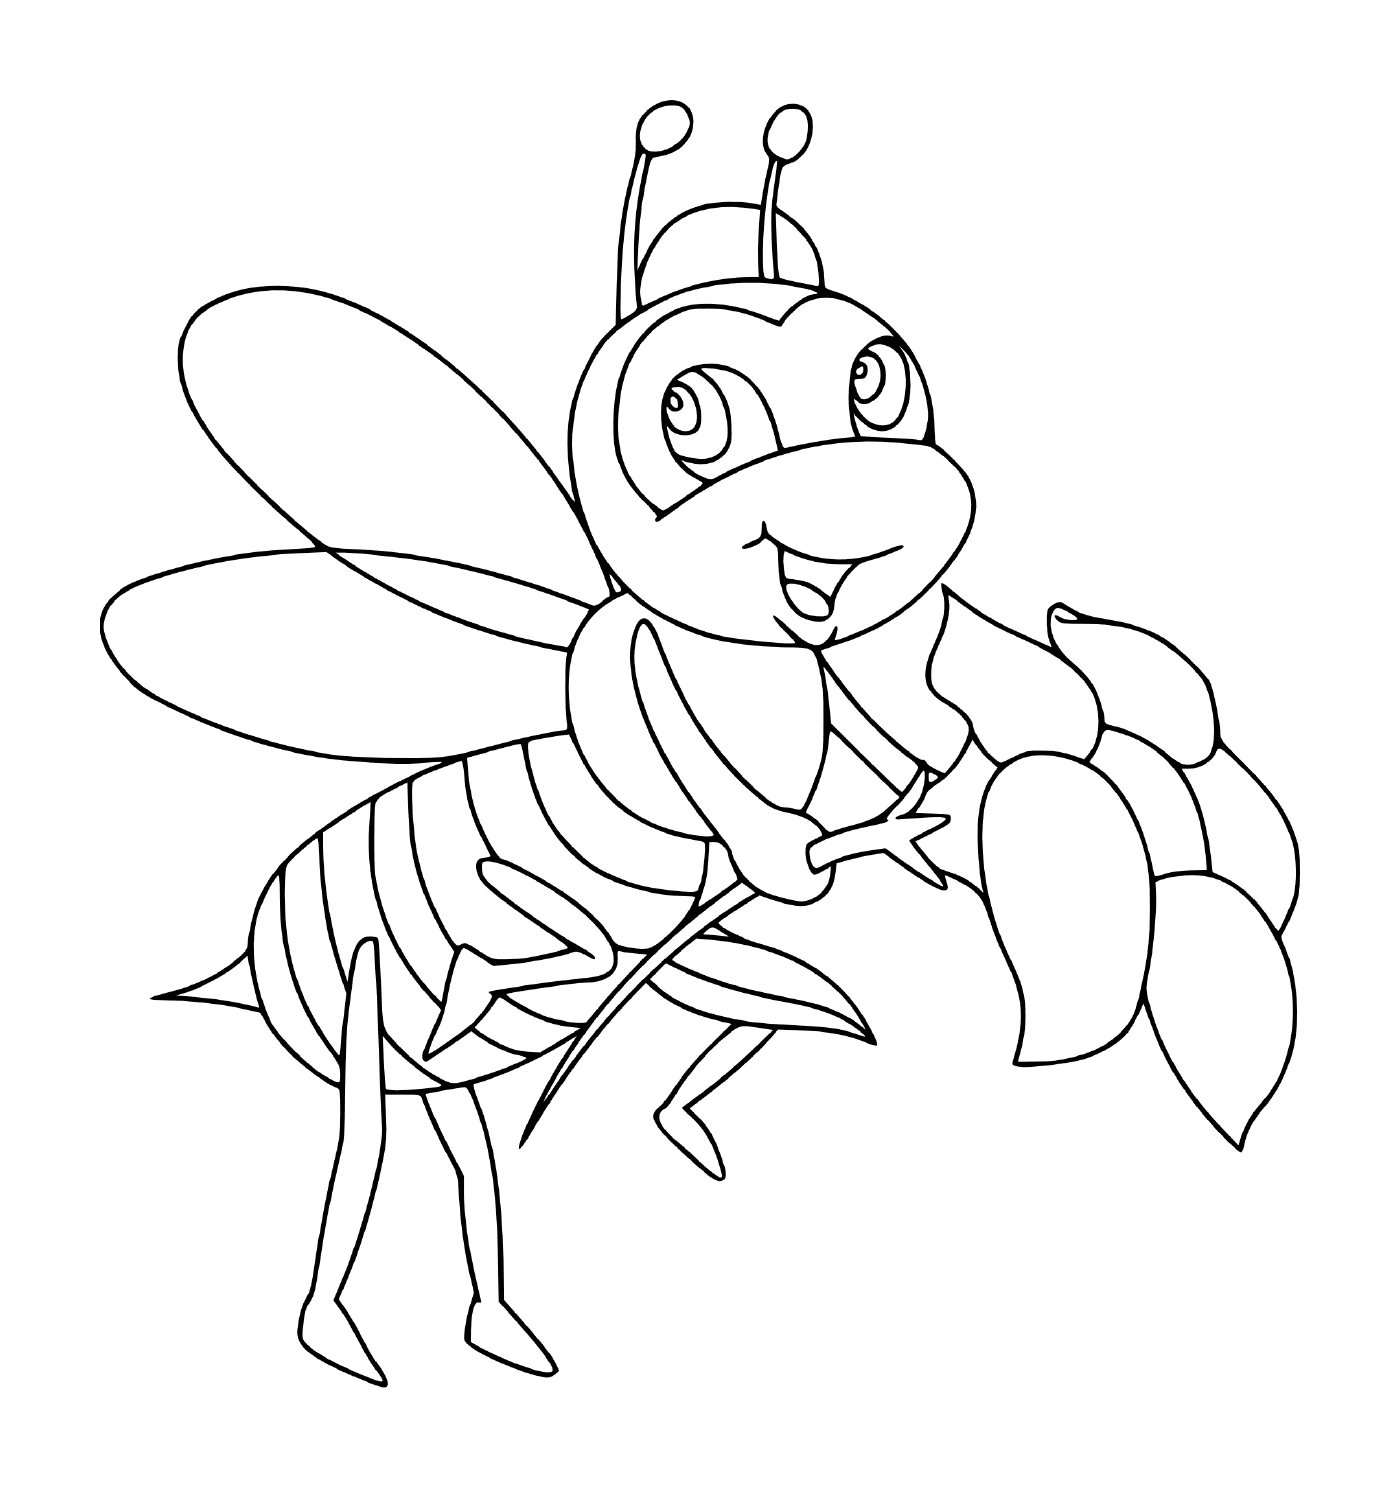  Queen bee social 